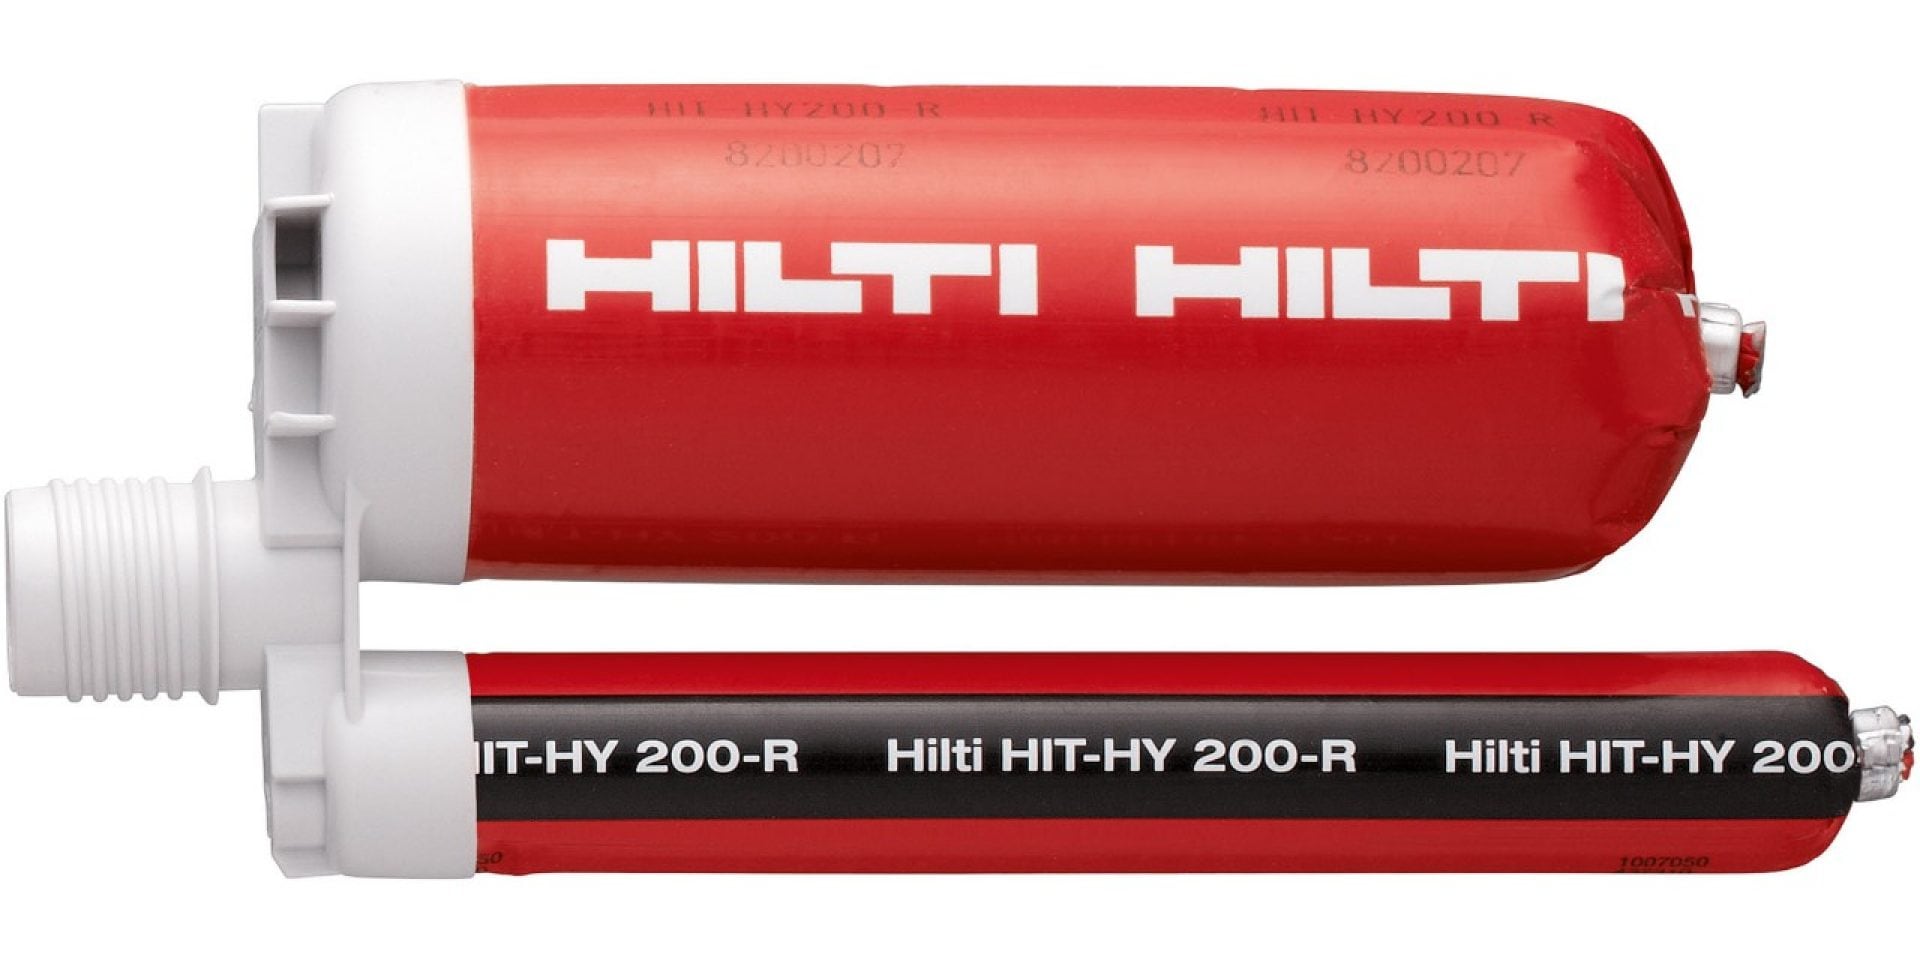 HIT-HY 200-R 高性能ハイブリッド接着系注入方式アンカーは、SafeSet工法の一部として、あと施工アンカーとあと施工鉄筋の定着にお使いいただける製品です。